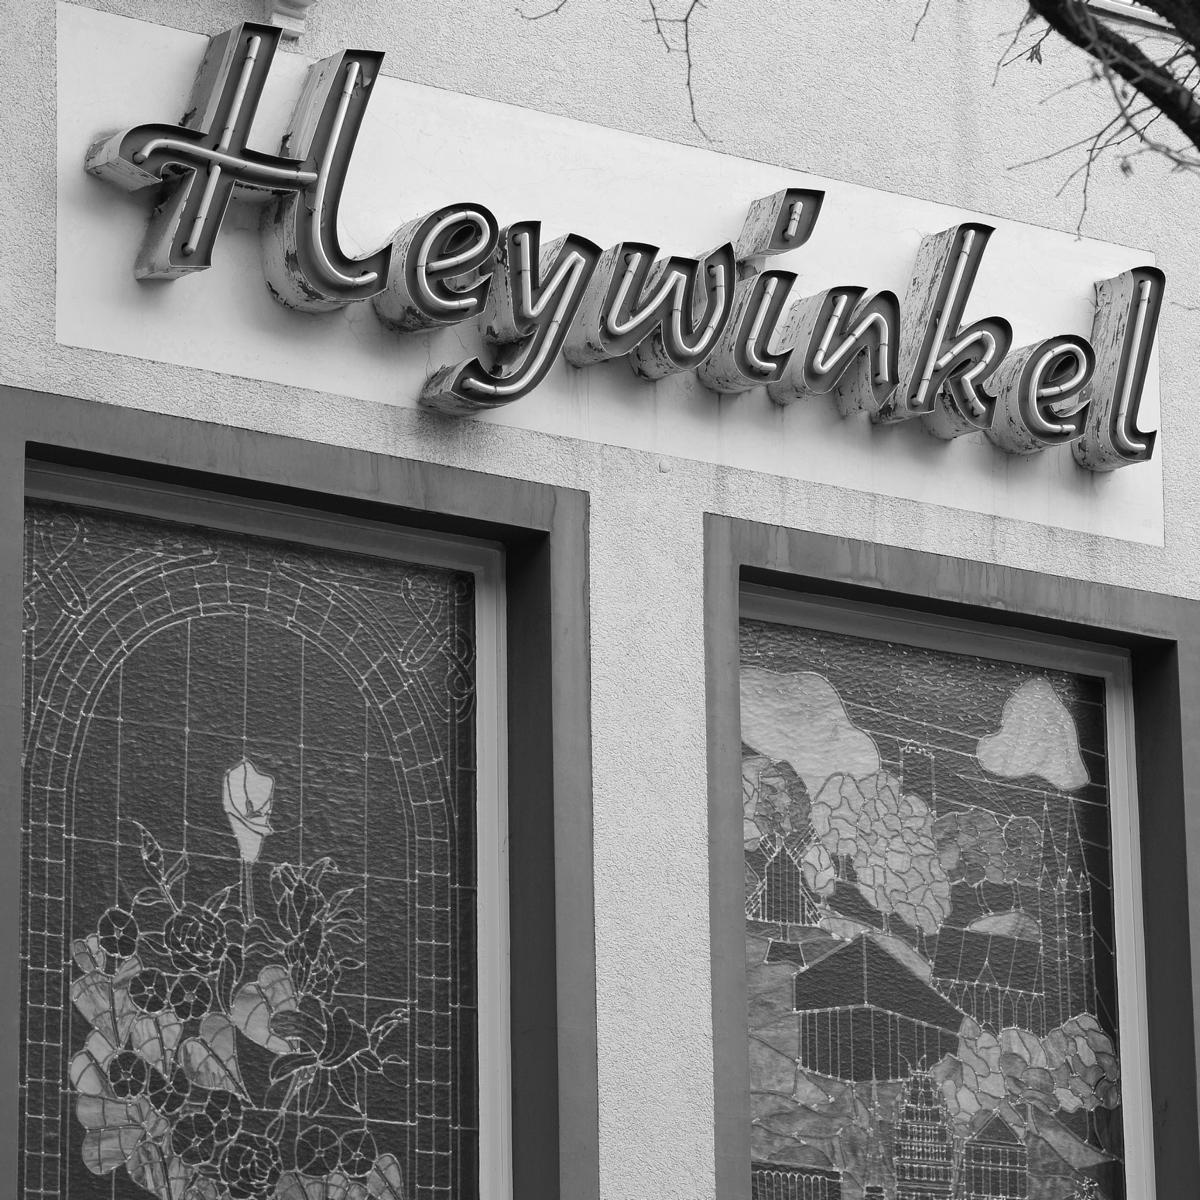 Glasbau Heywinkel